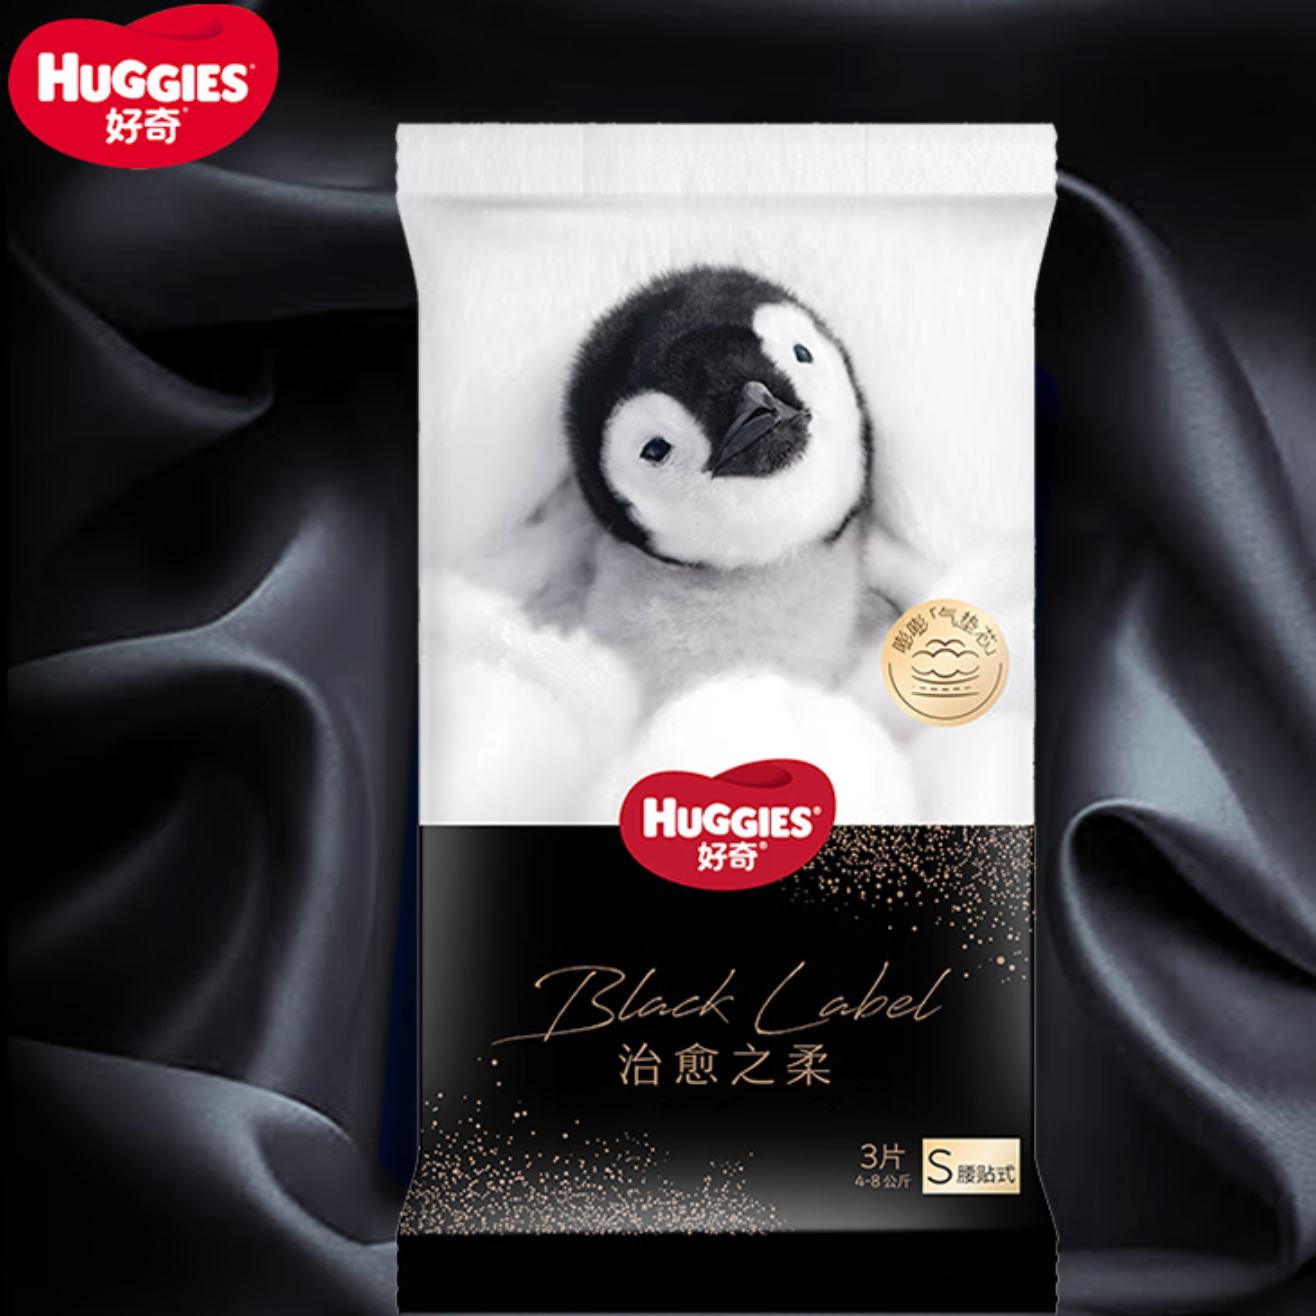 需弹券: Huggies 好奇 小企鹅纸尿裤 S码/M码 3片 2.9元包邮